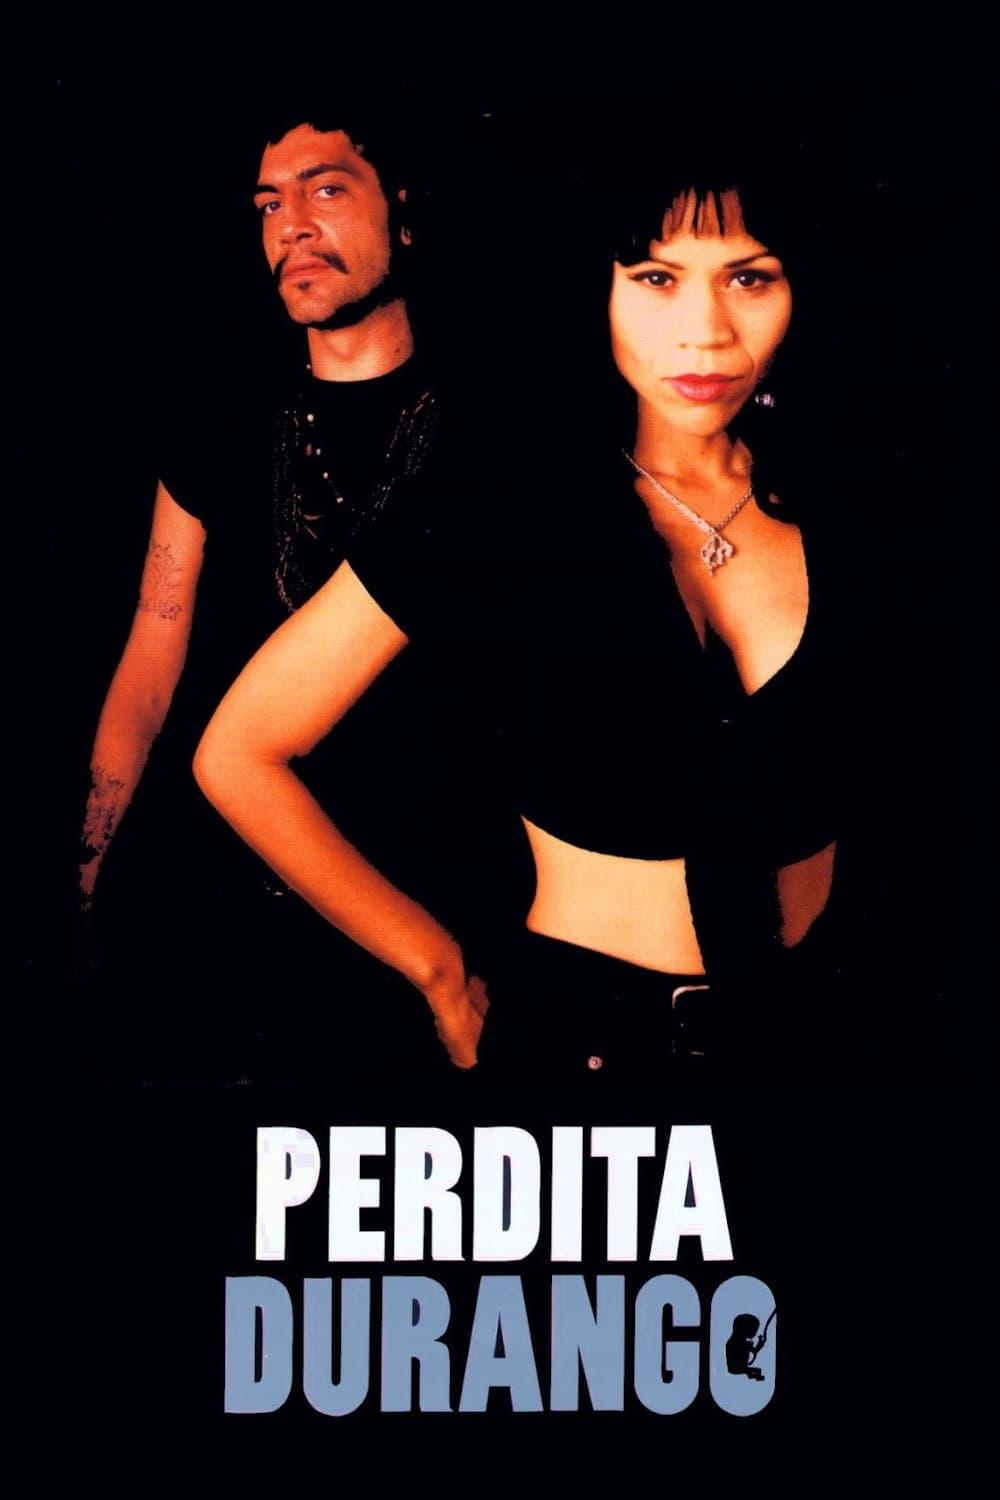 Perdita Durango poster